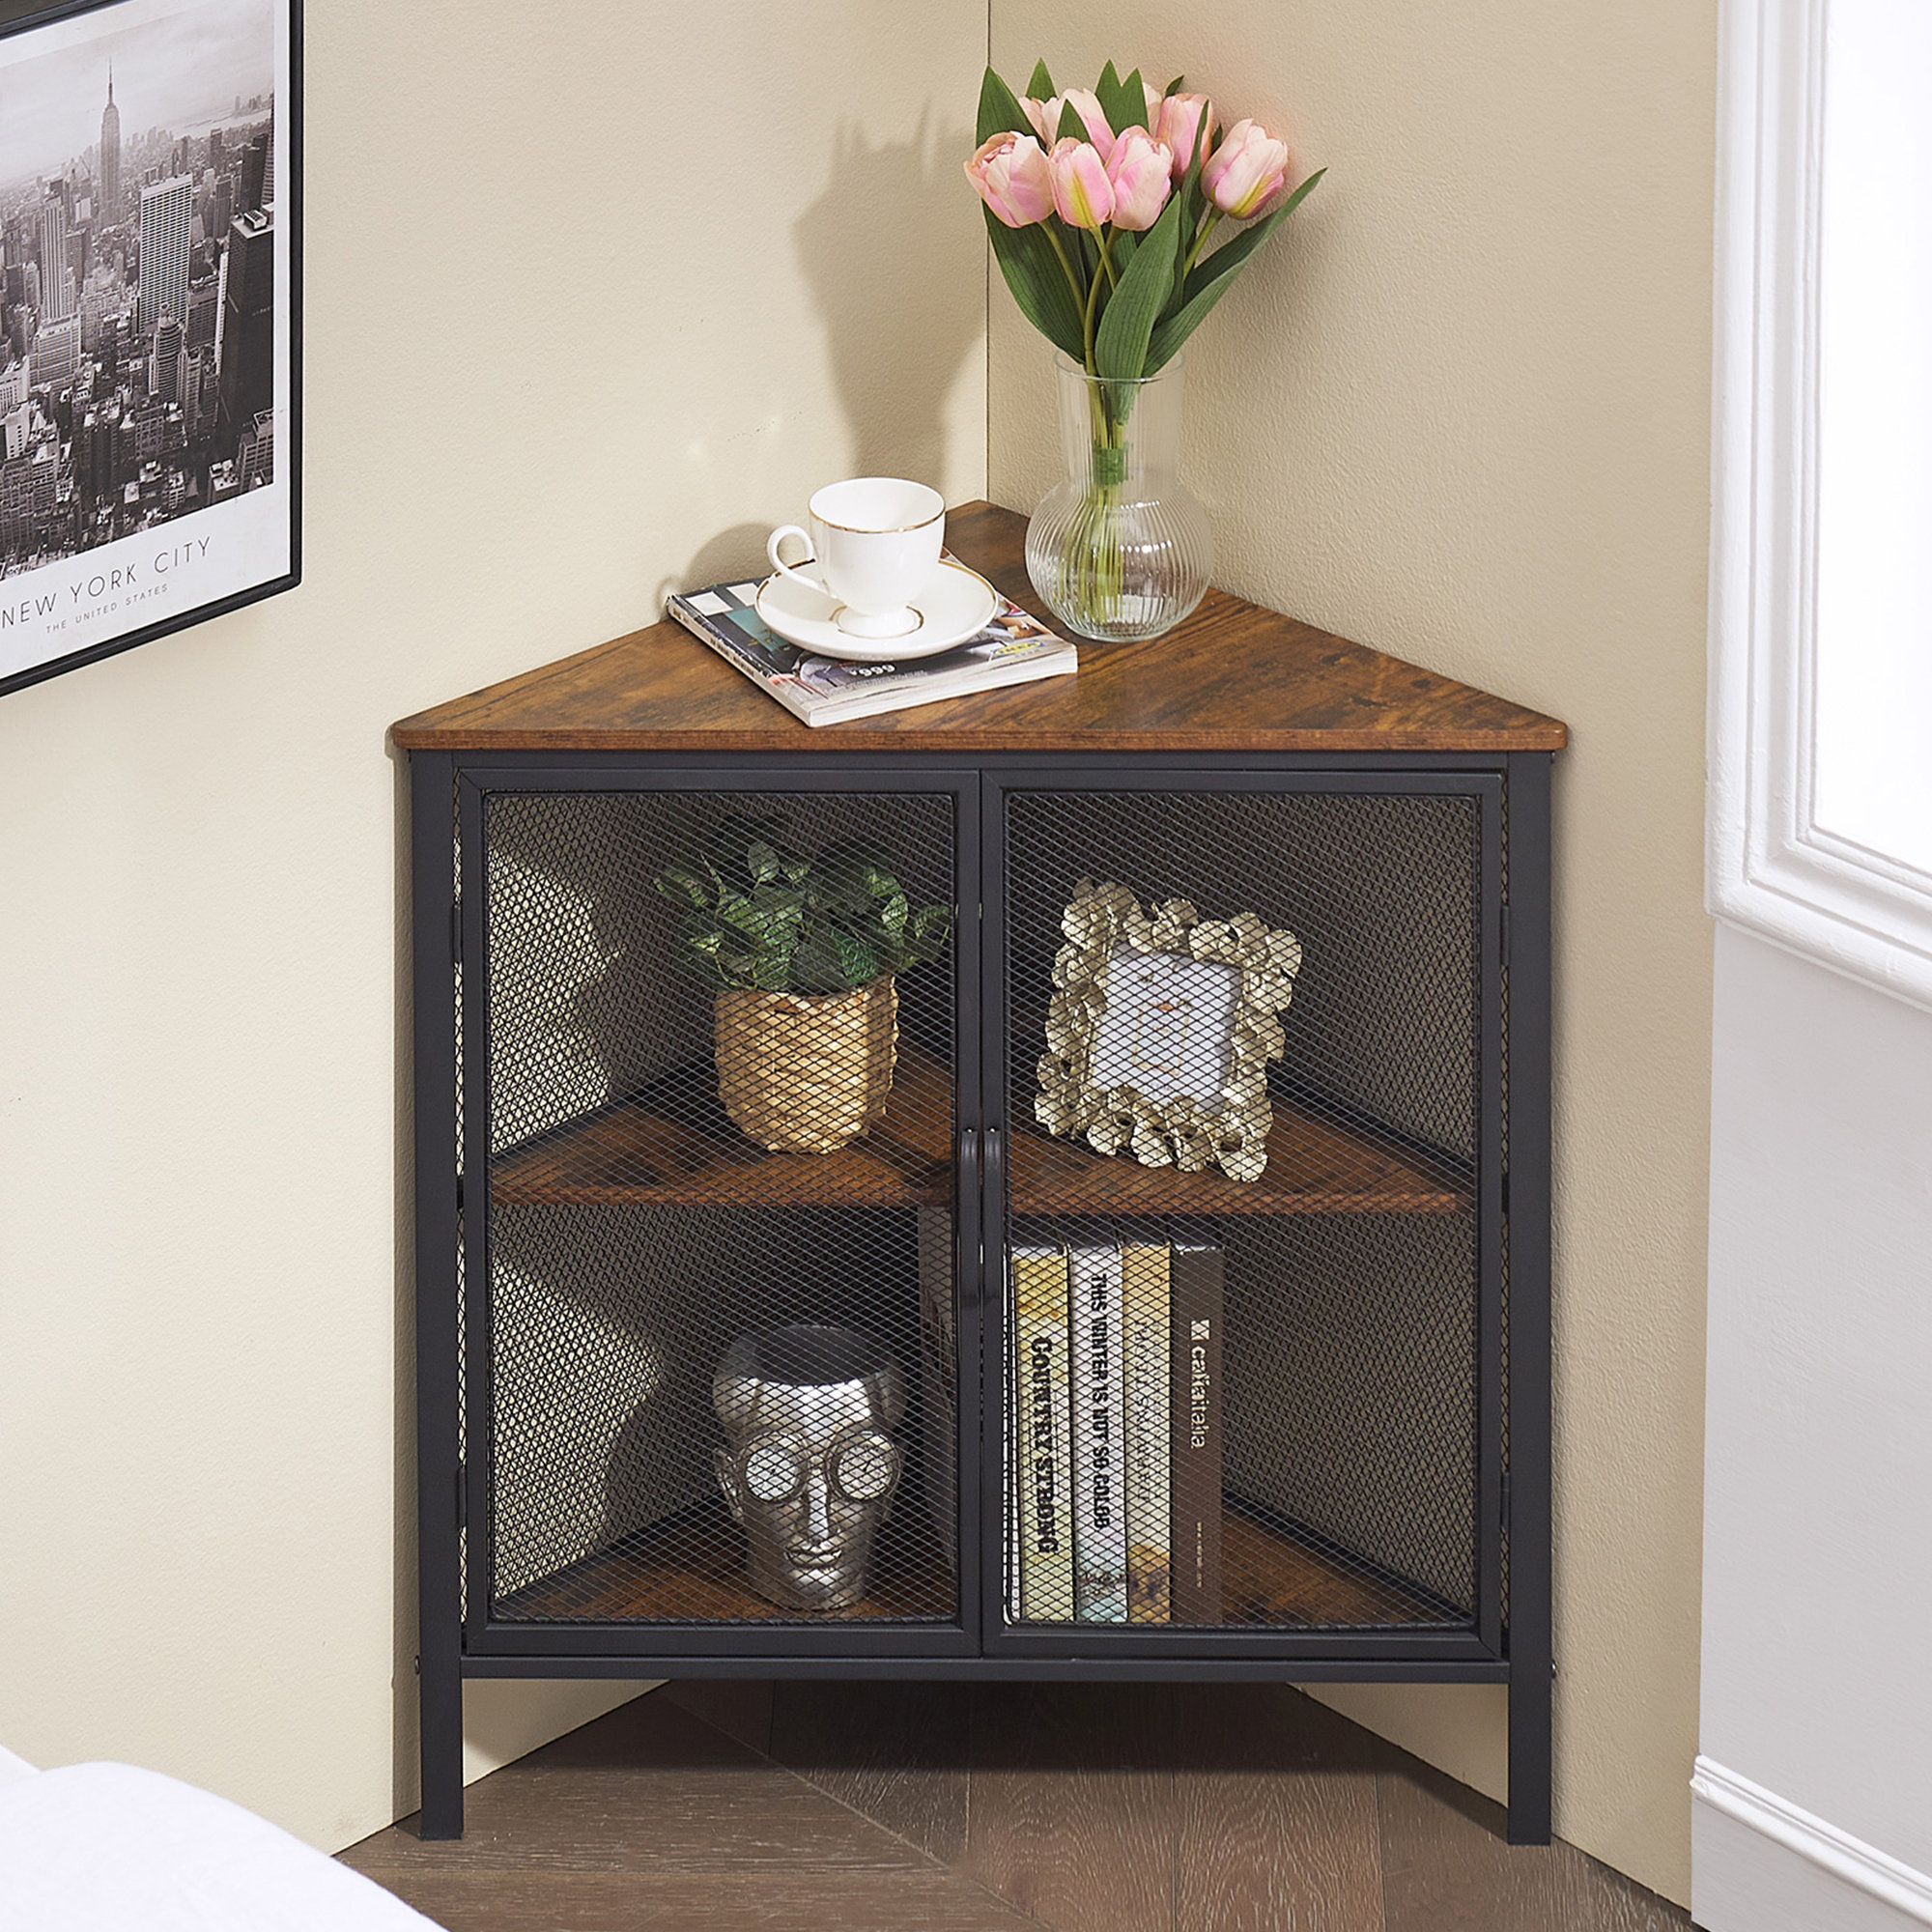 https://assets.wfcdn.com/im/95110063/compr-r85/2129/212974521/kempst-corner-end-table-shelf-3-tier-display-shelves-with-protection-door-metal-frame-storage-cabinet-org.jpg